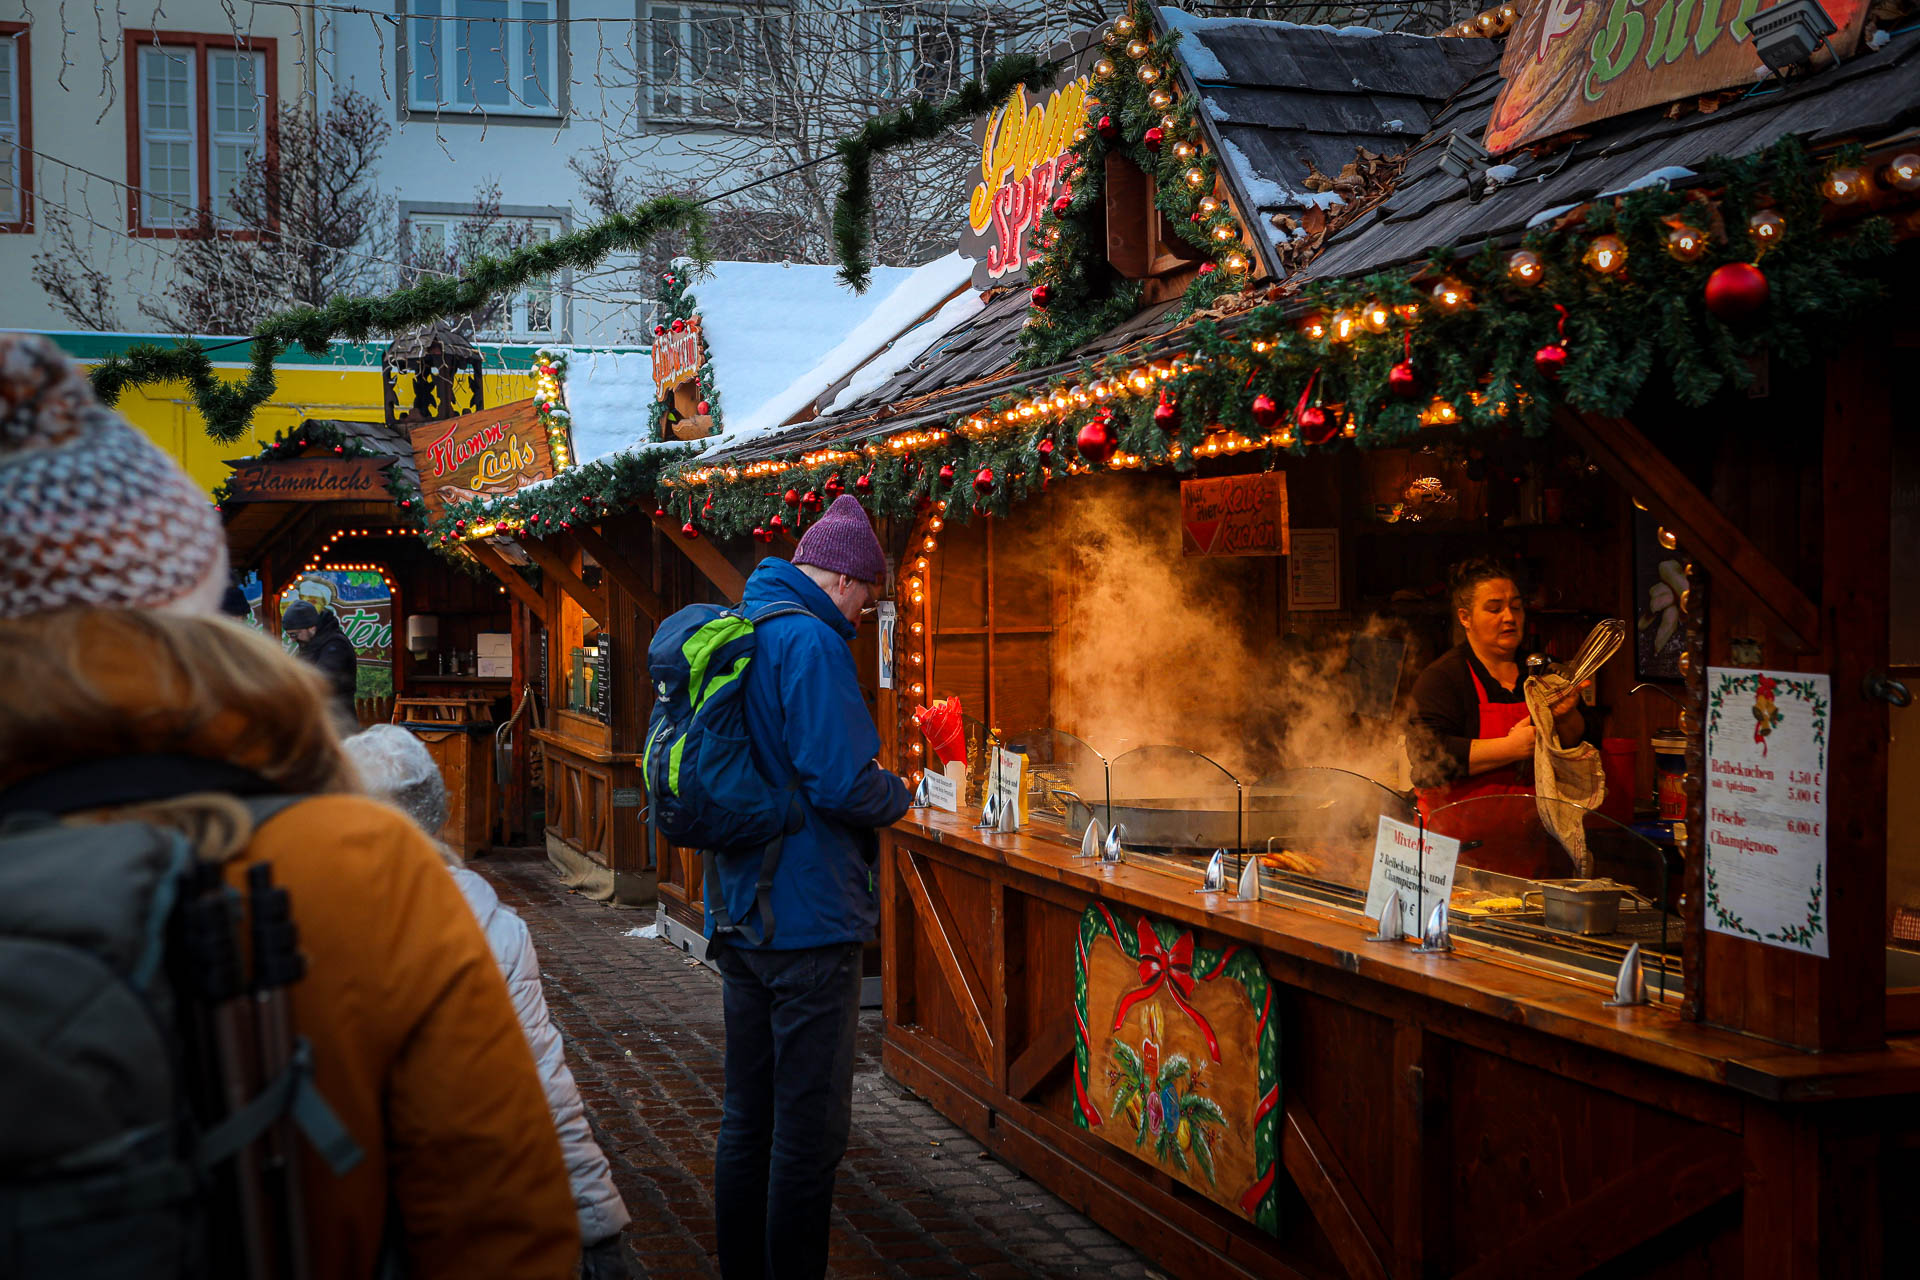 Manouk met gele jas en muts loopt langs kraampjes waar je eten kunt kopen op de kerstmarkt in Koblenz, met lichtjes boven de kraam en rook die uit de kramen komt door de kou